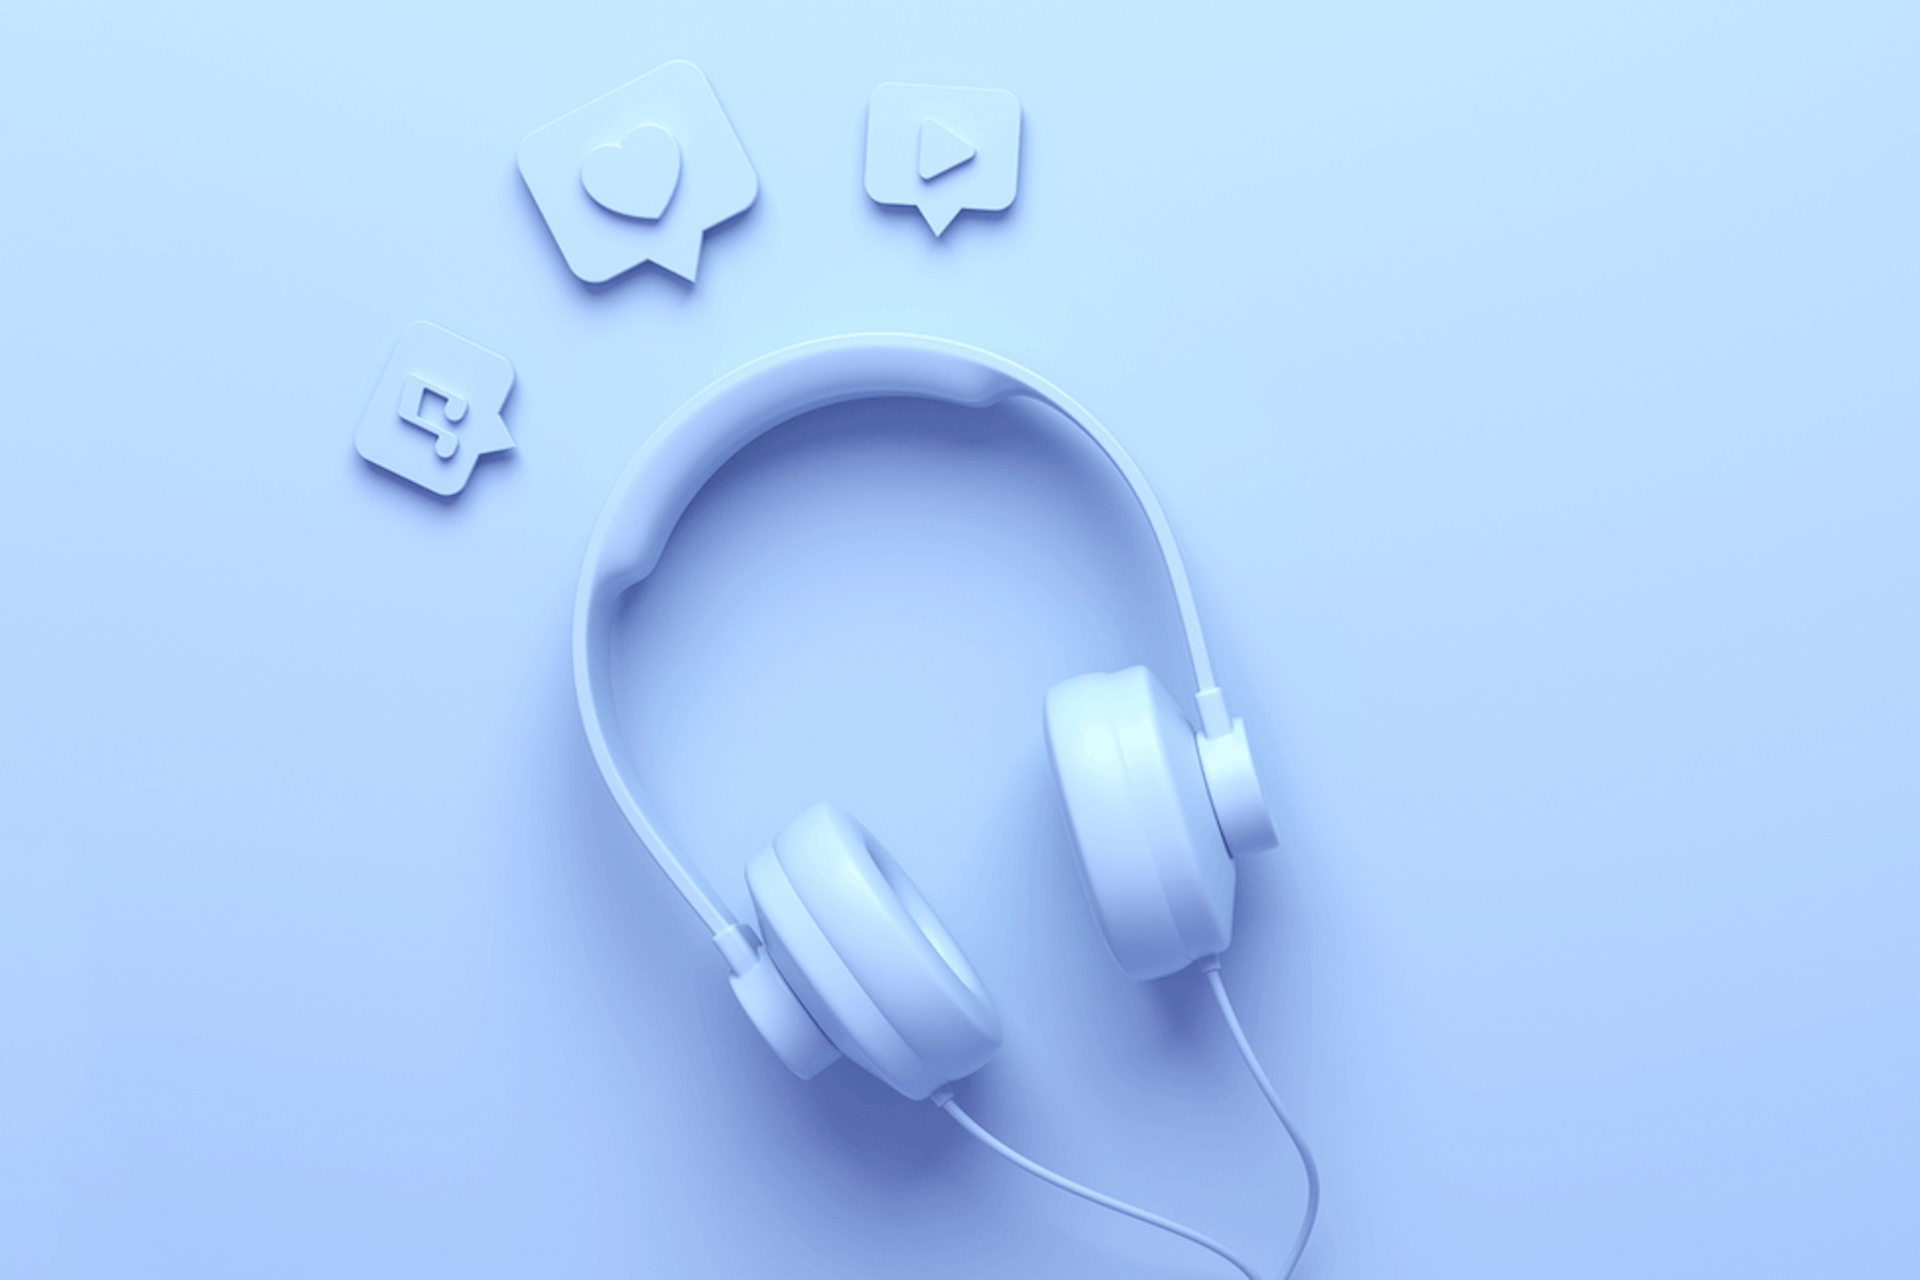 3D illustration of blue headphones for social listening / social media monitoring